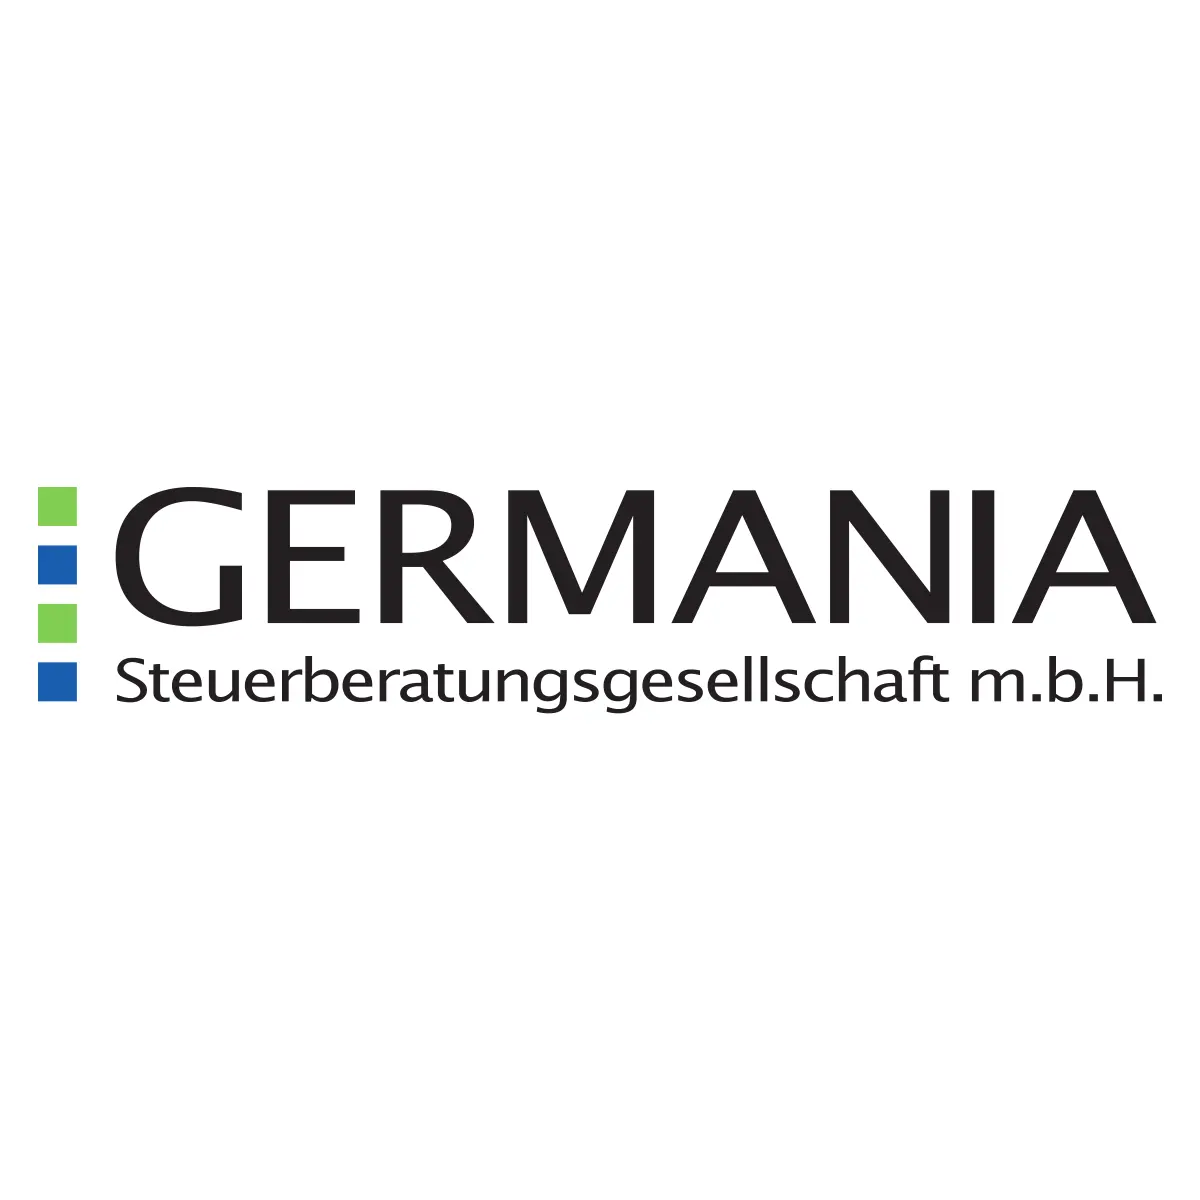 Germania Steuerberatungsgesellschaft m.b.H